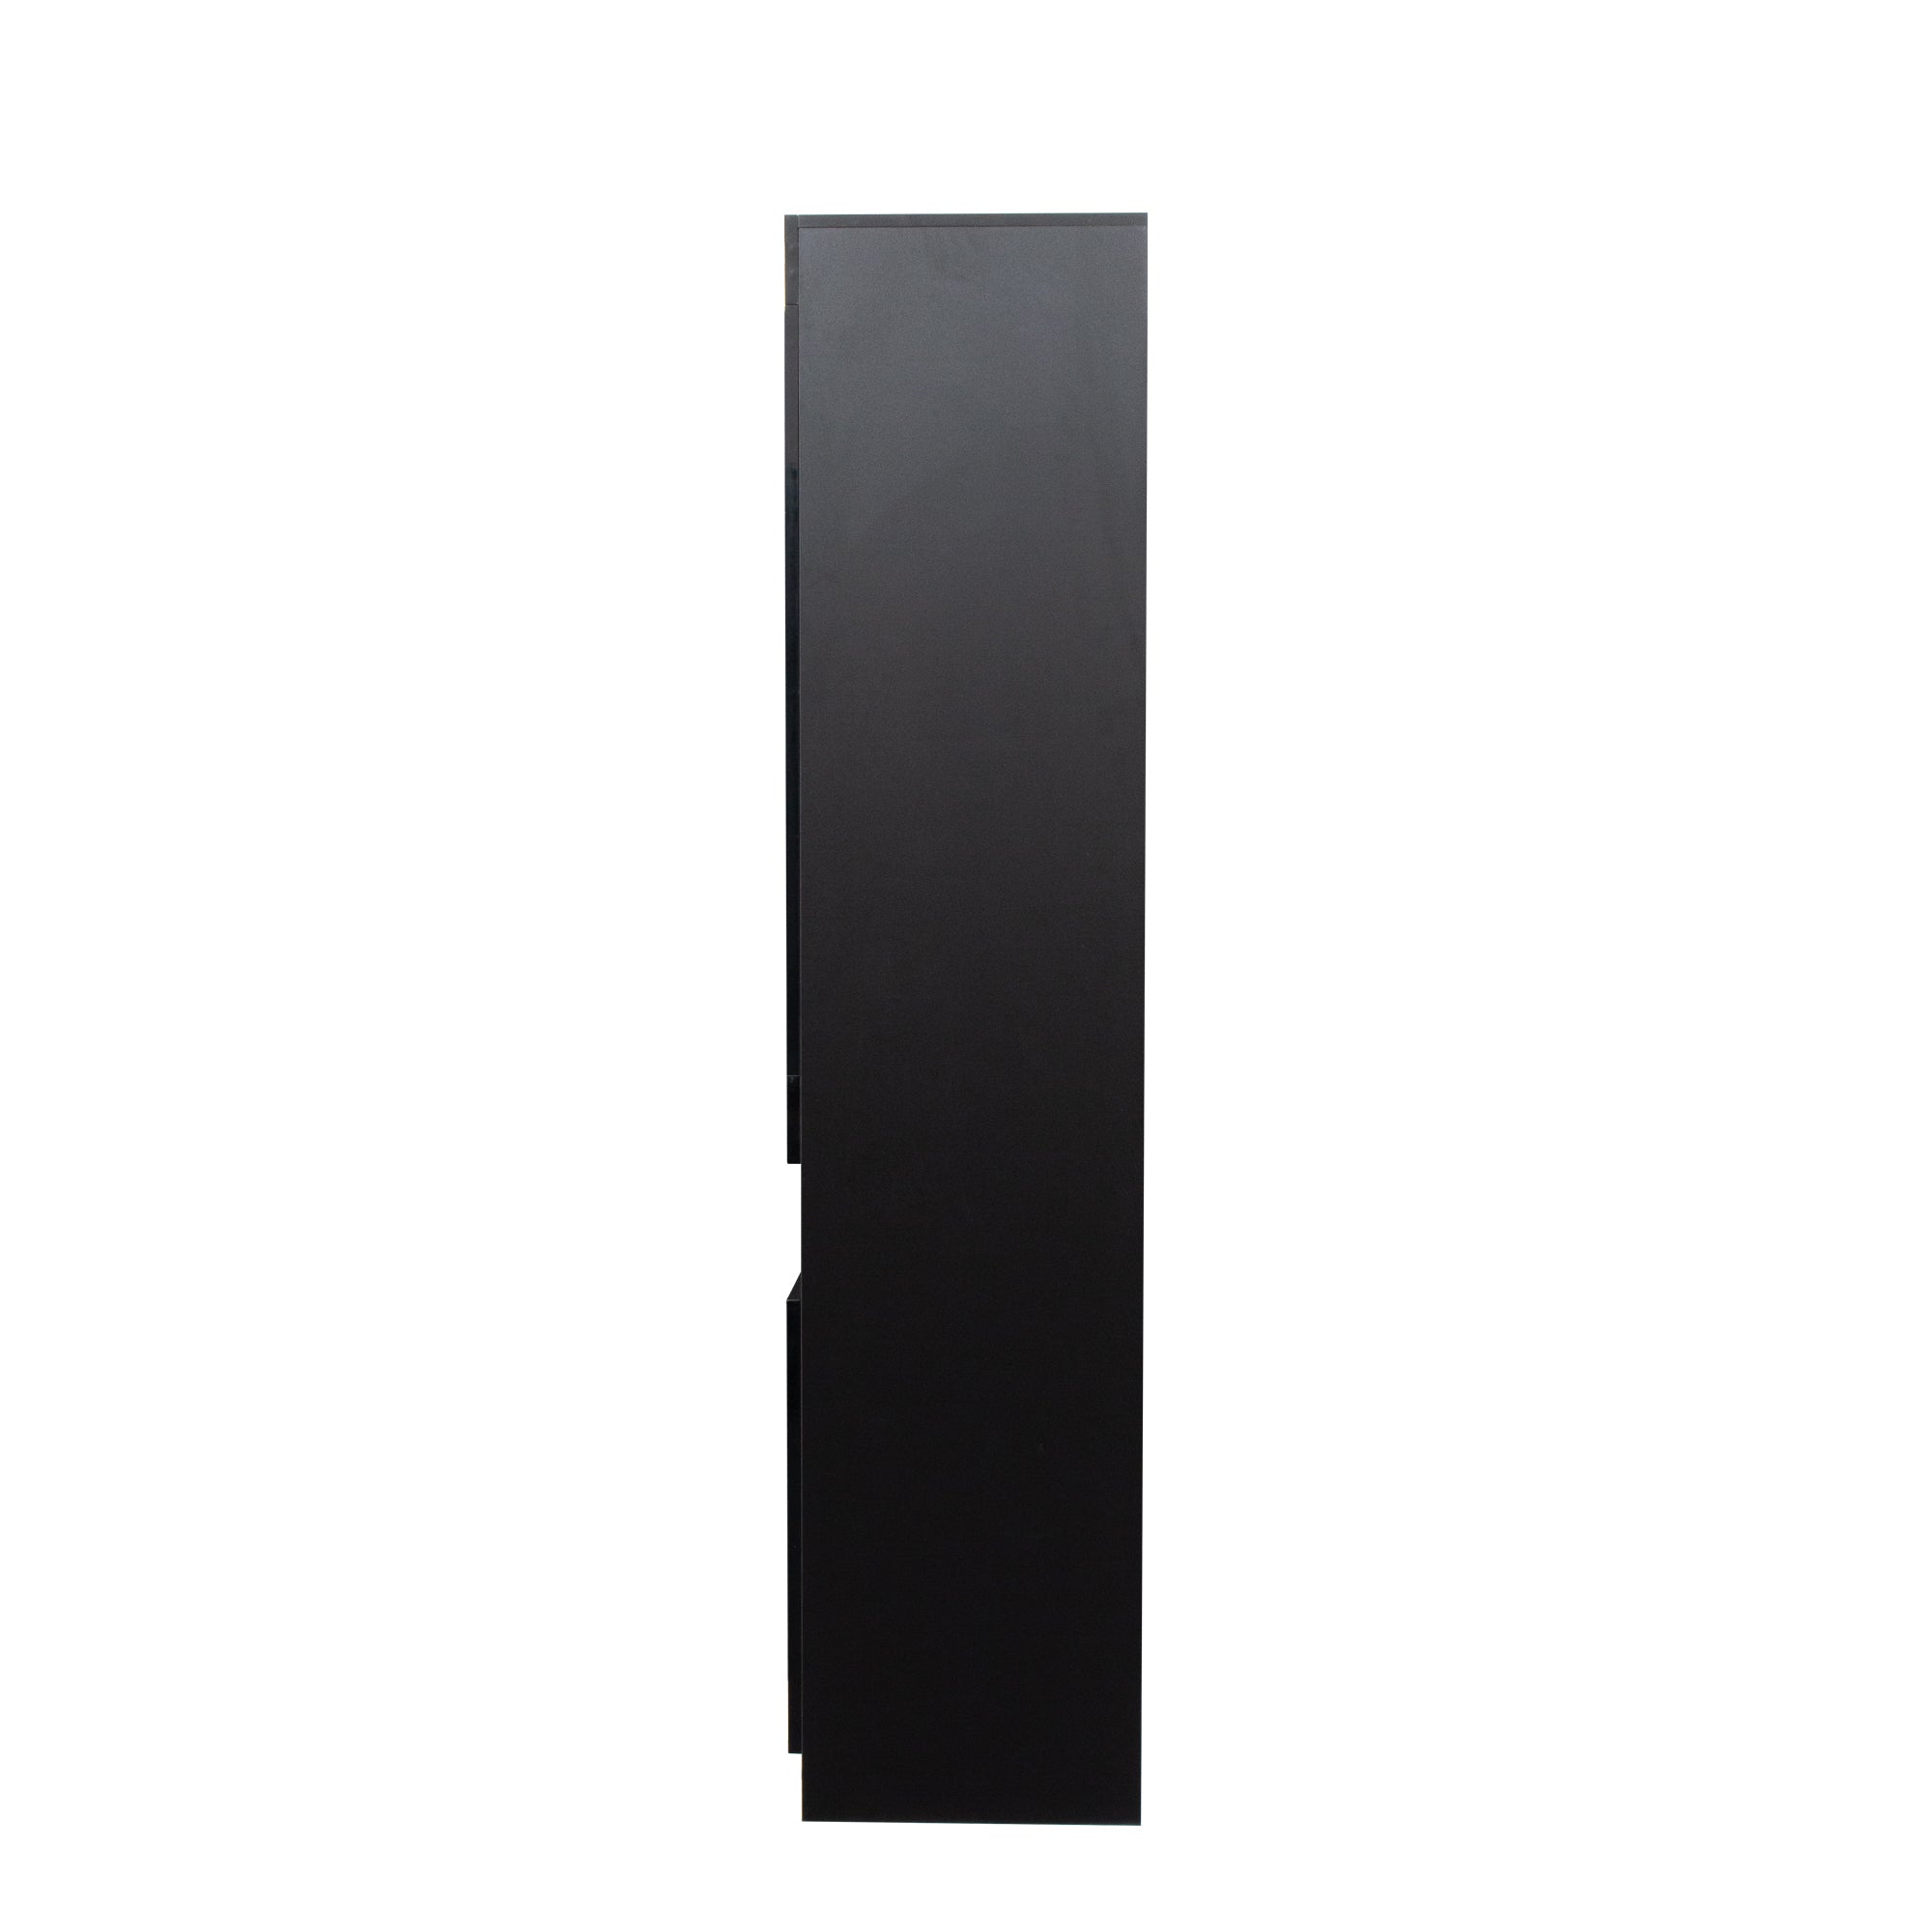 Sideboard with LED Light Shelf Drawer (Black)